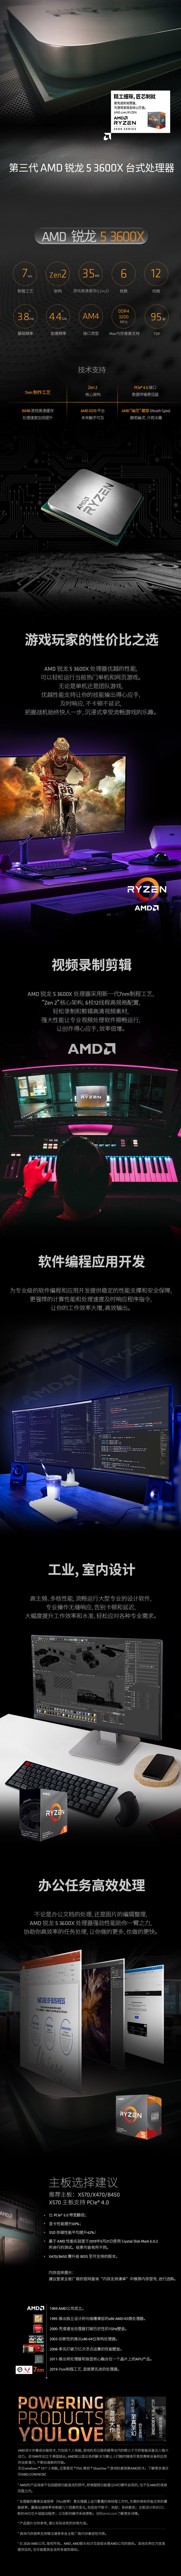 AMD中国电商视觉设计图2